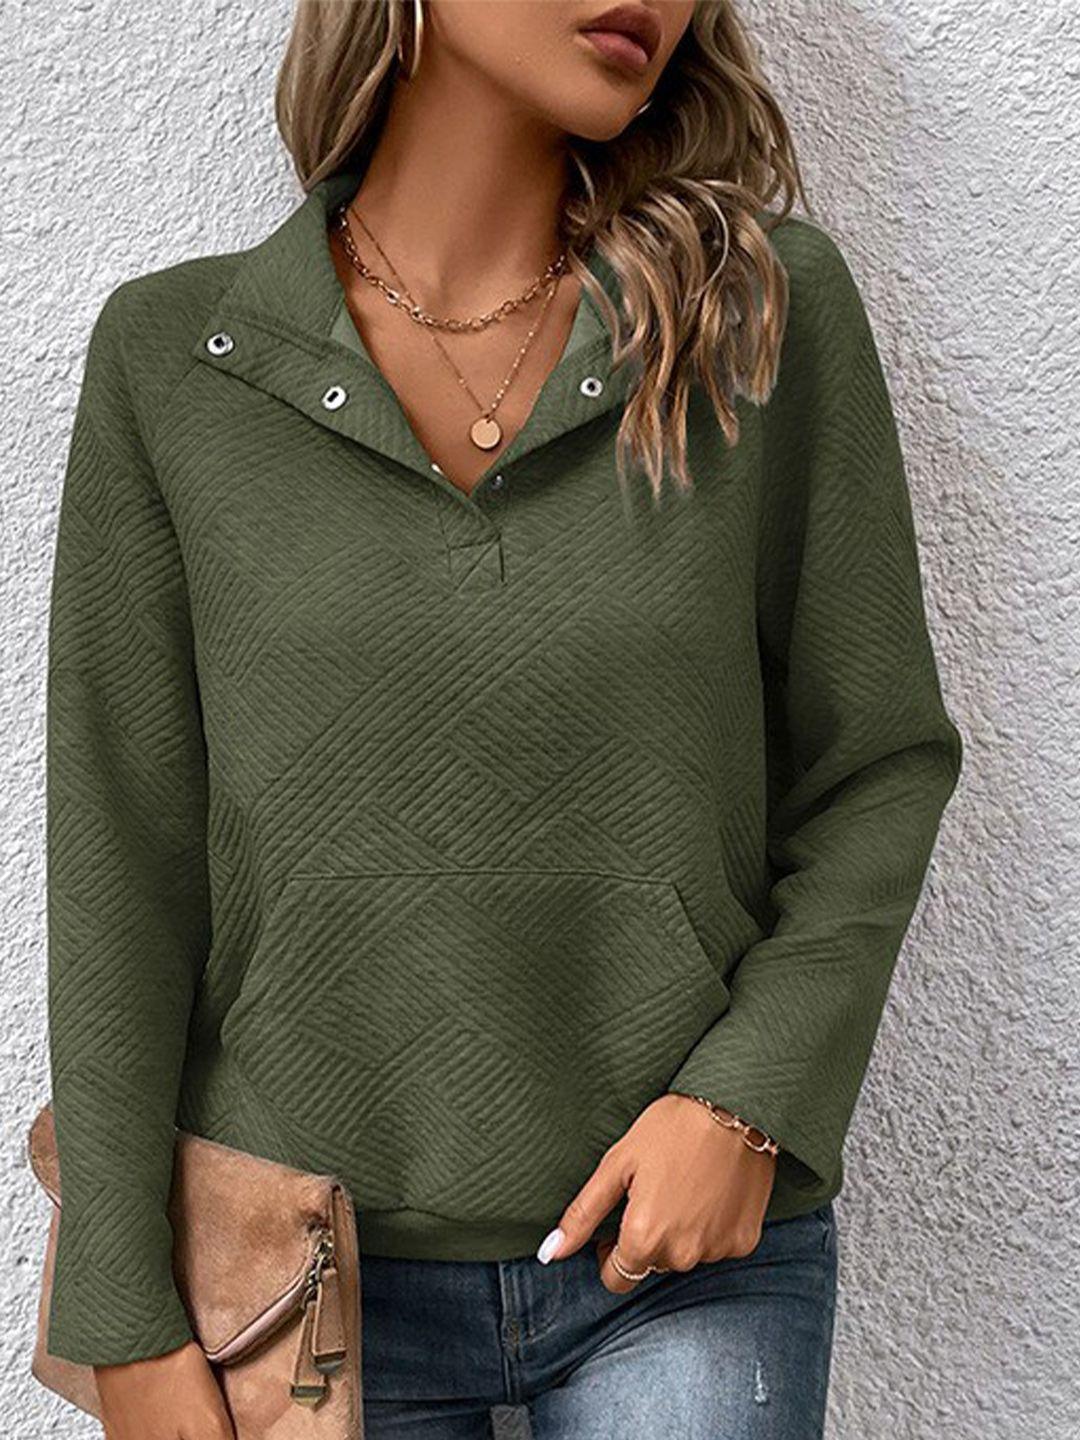 stylecast women green sweatshirt